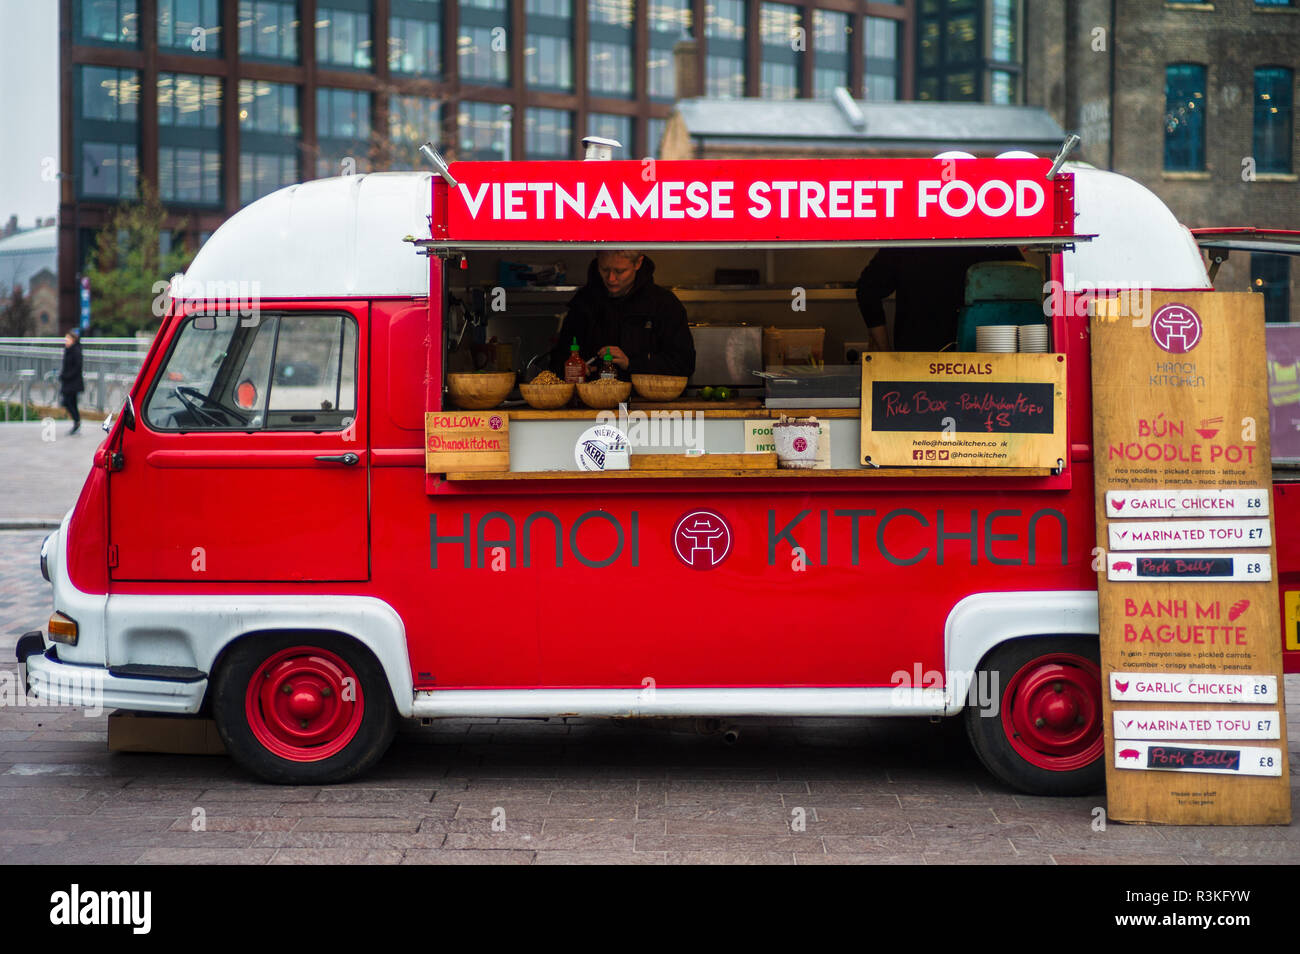 London Street Food - Hanoi cucina vietnamita cibo di strada Van in un cibo di strada nel mercato della Londra Kings Cross Area Foto Stock